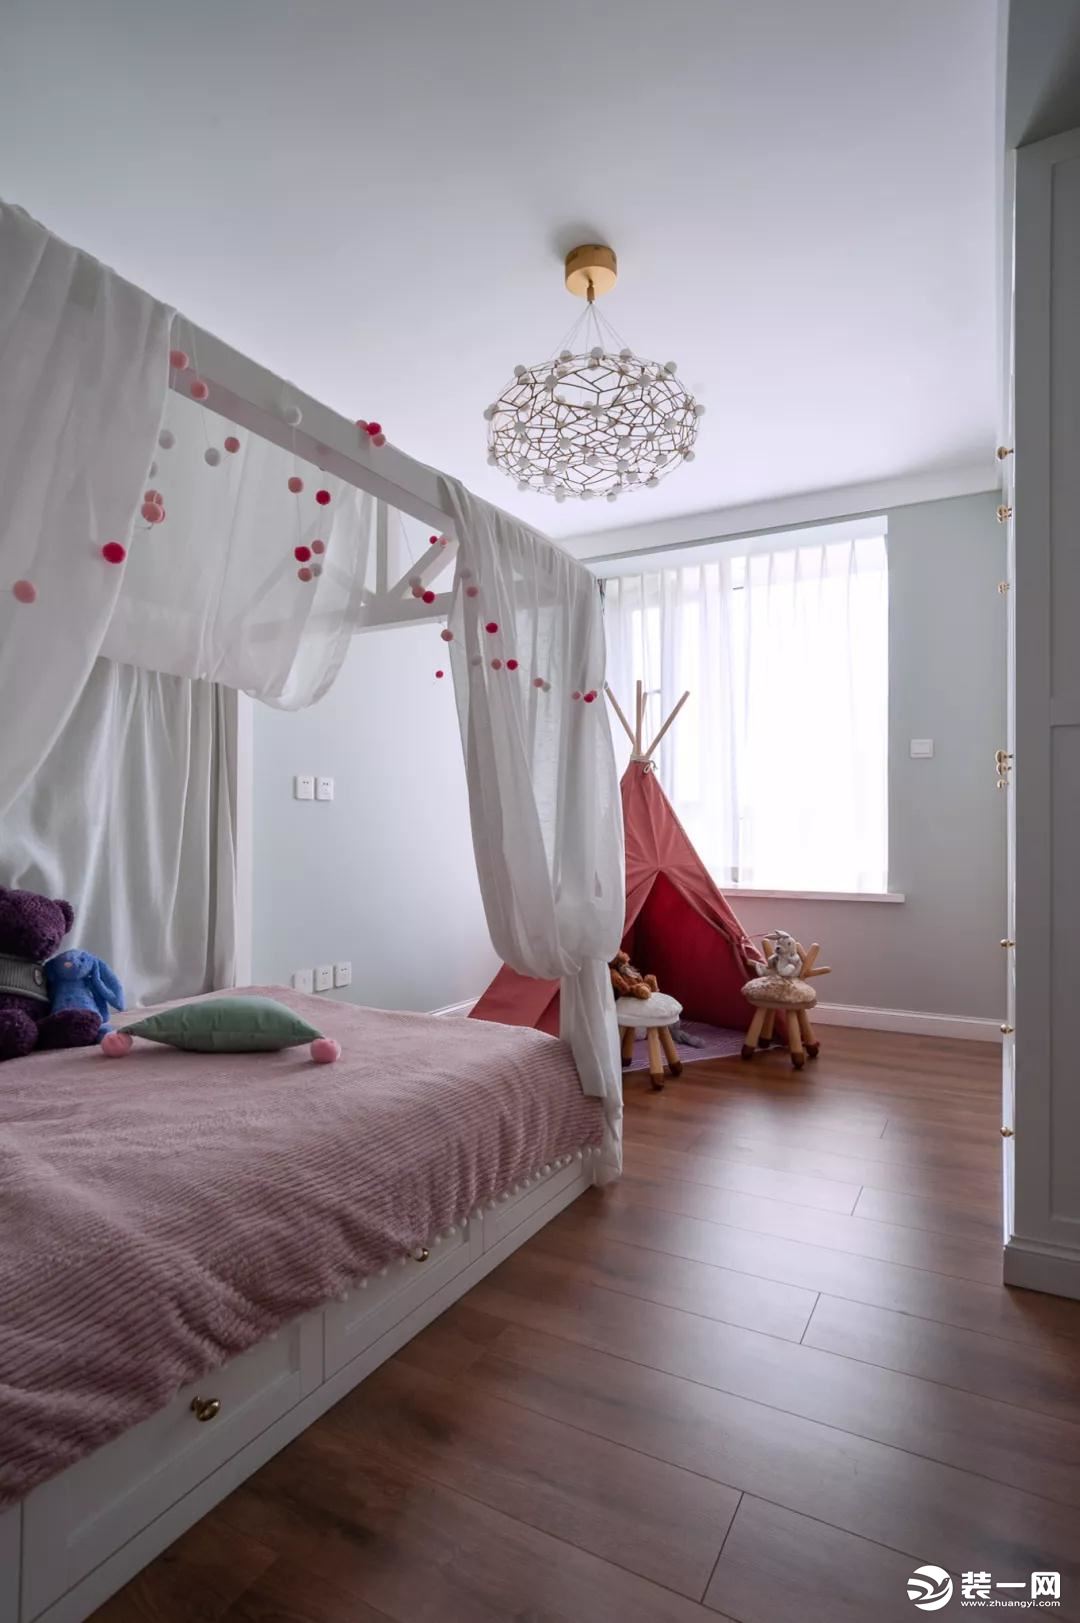 儿童房的软装以粉色为主，墙面被刷成了浅绿色，榻榻米床搭配衣柜和一个小帐篷，让儿童房布局紧凑而又实用，